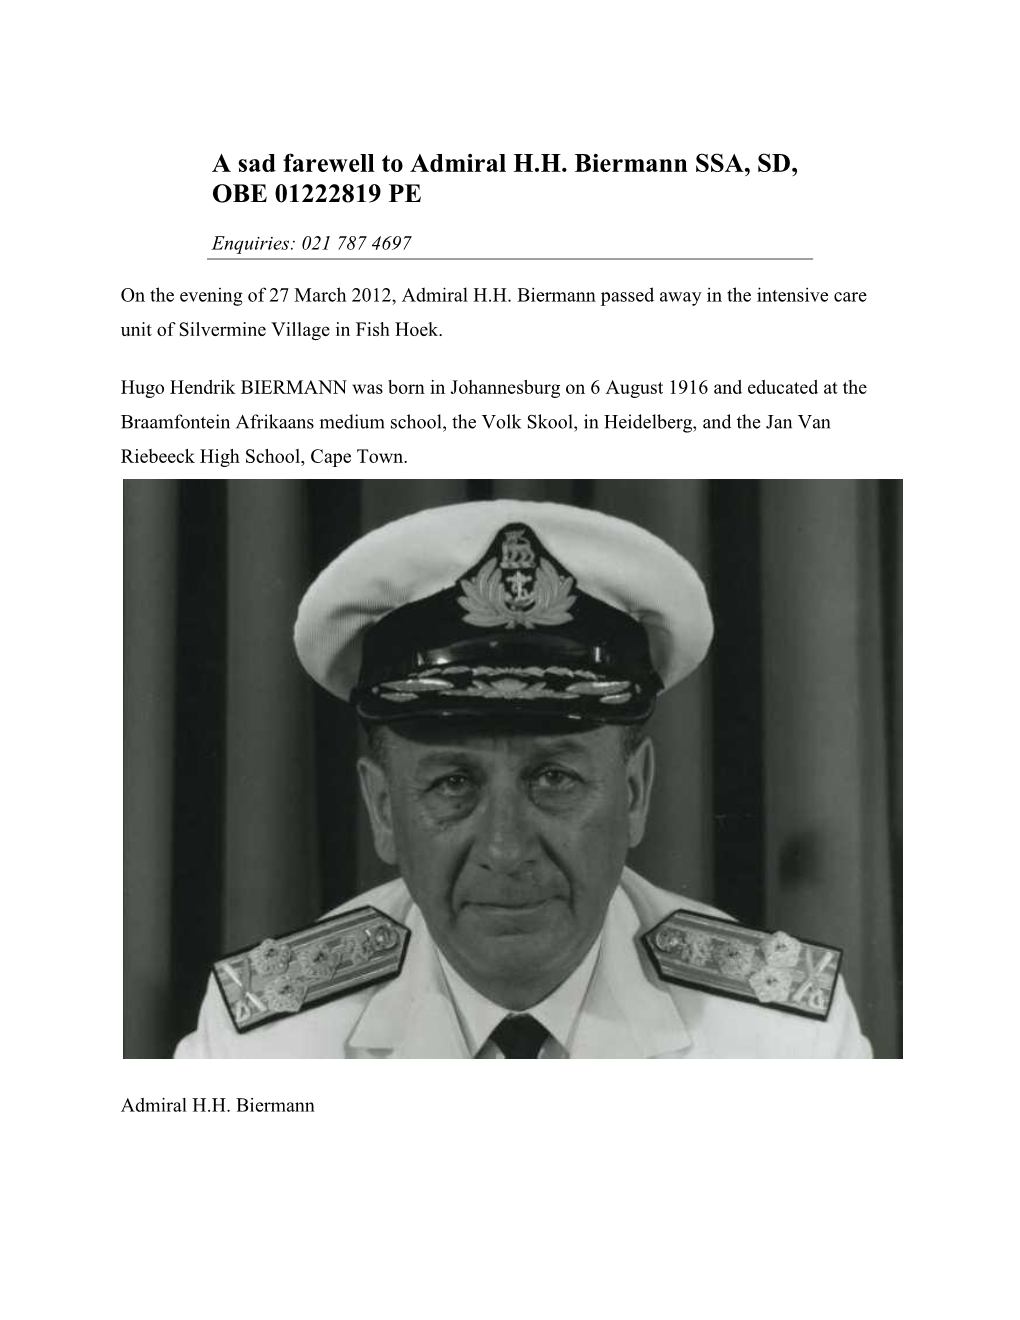 A Sad Farewell to Admiral H.H. Biermann SSA, SD, OBE 01222819 PE